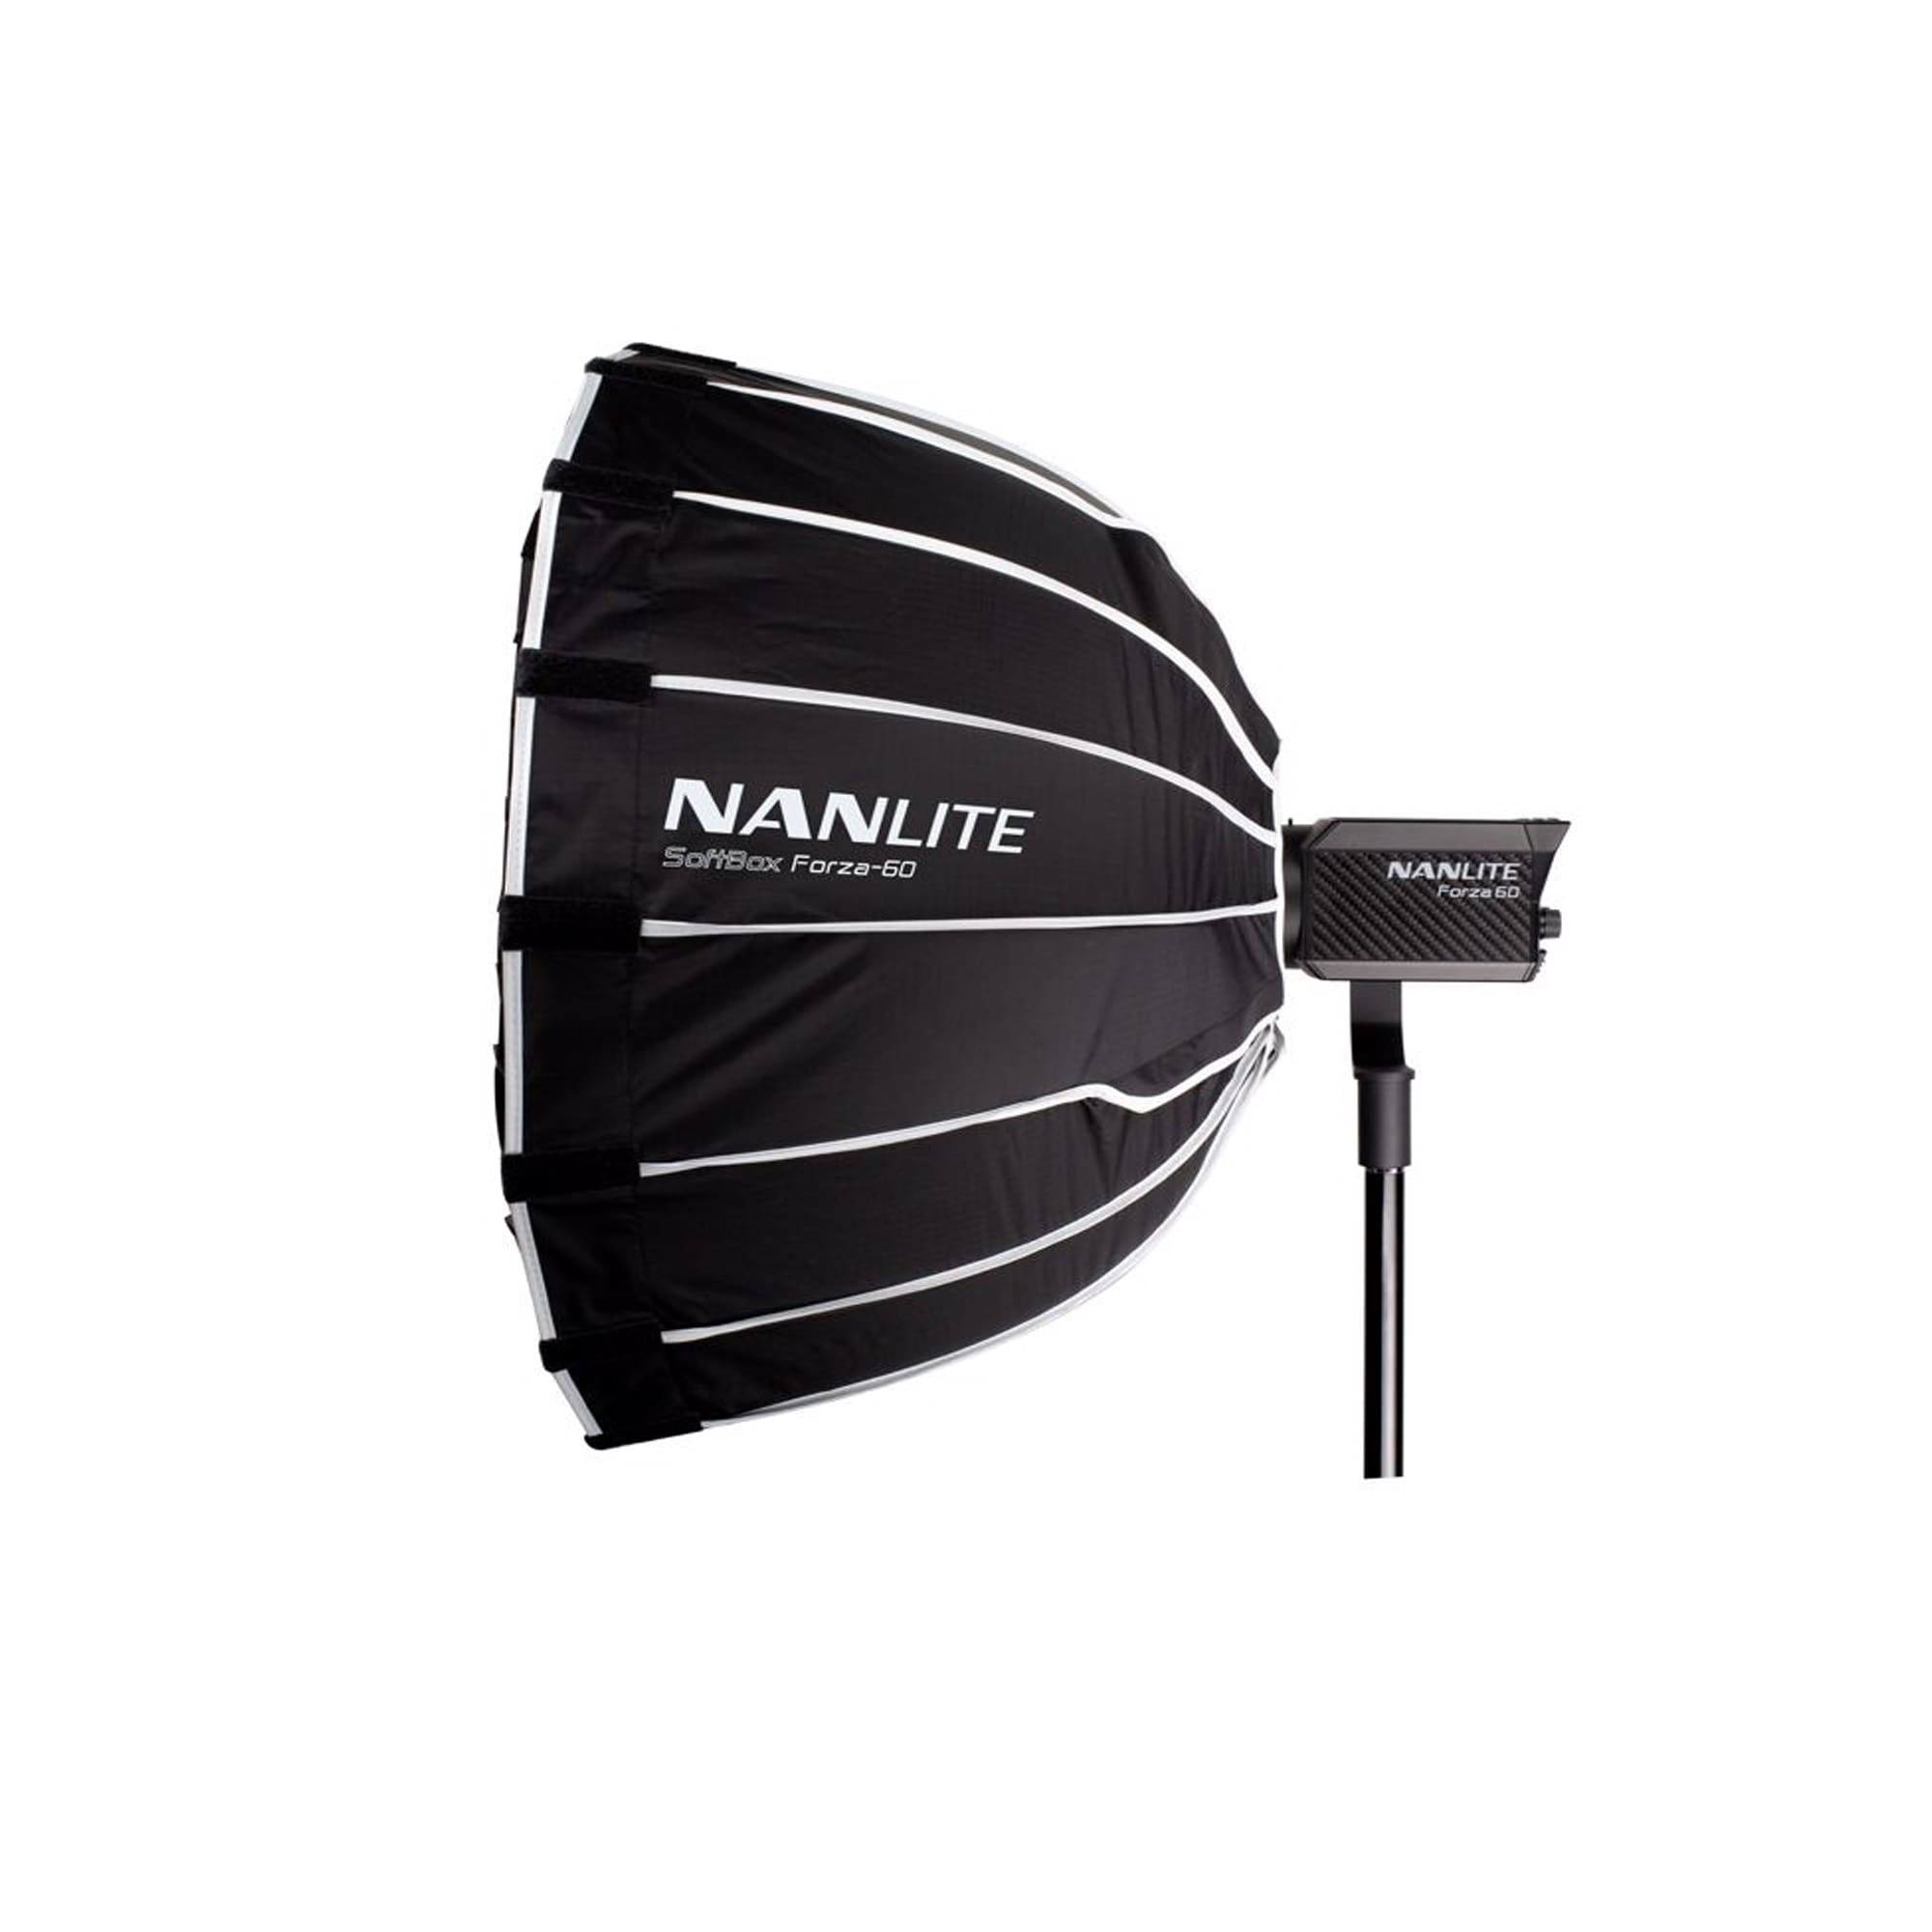 Nanlite Parabolic Softbox 60 cm för Forza 60